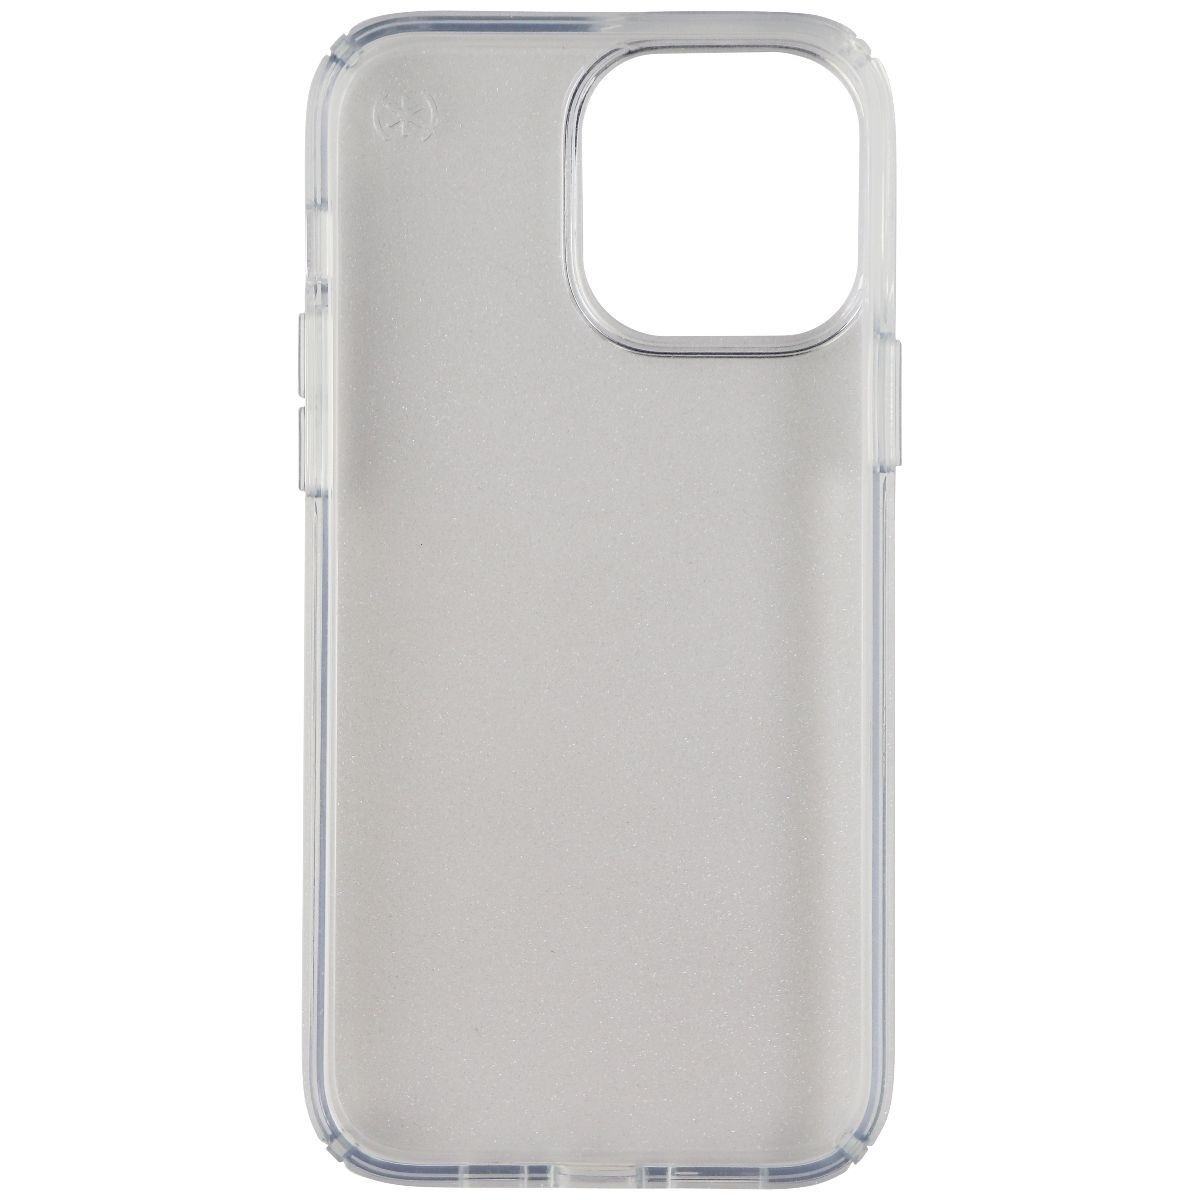 Speck Presidio Perfect Clear Case For IPhone 13 Pro Max/12 Pro Max - Glitter